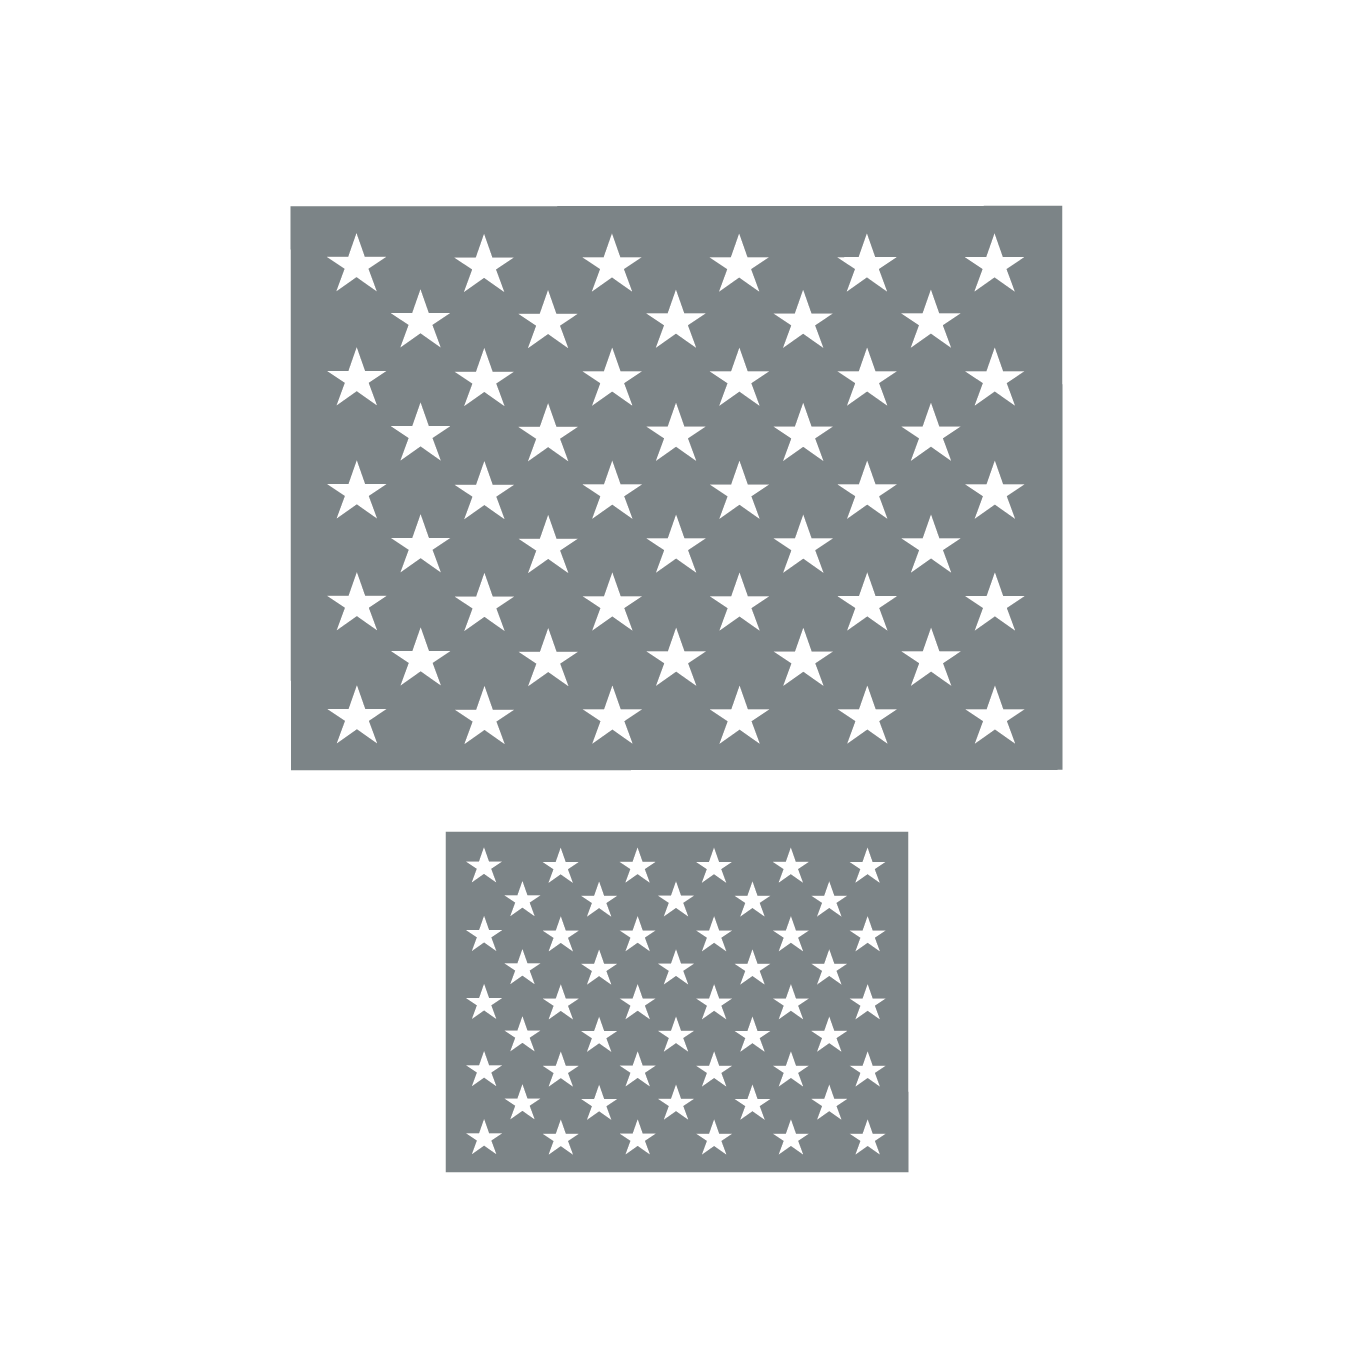 50 Stars Stencil USA FLAG Star Stencil Create Flag Signs Reusable